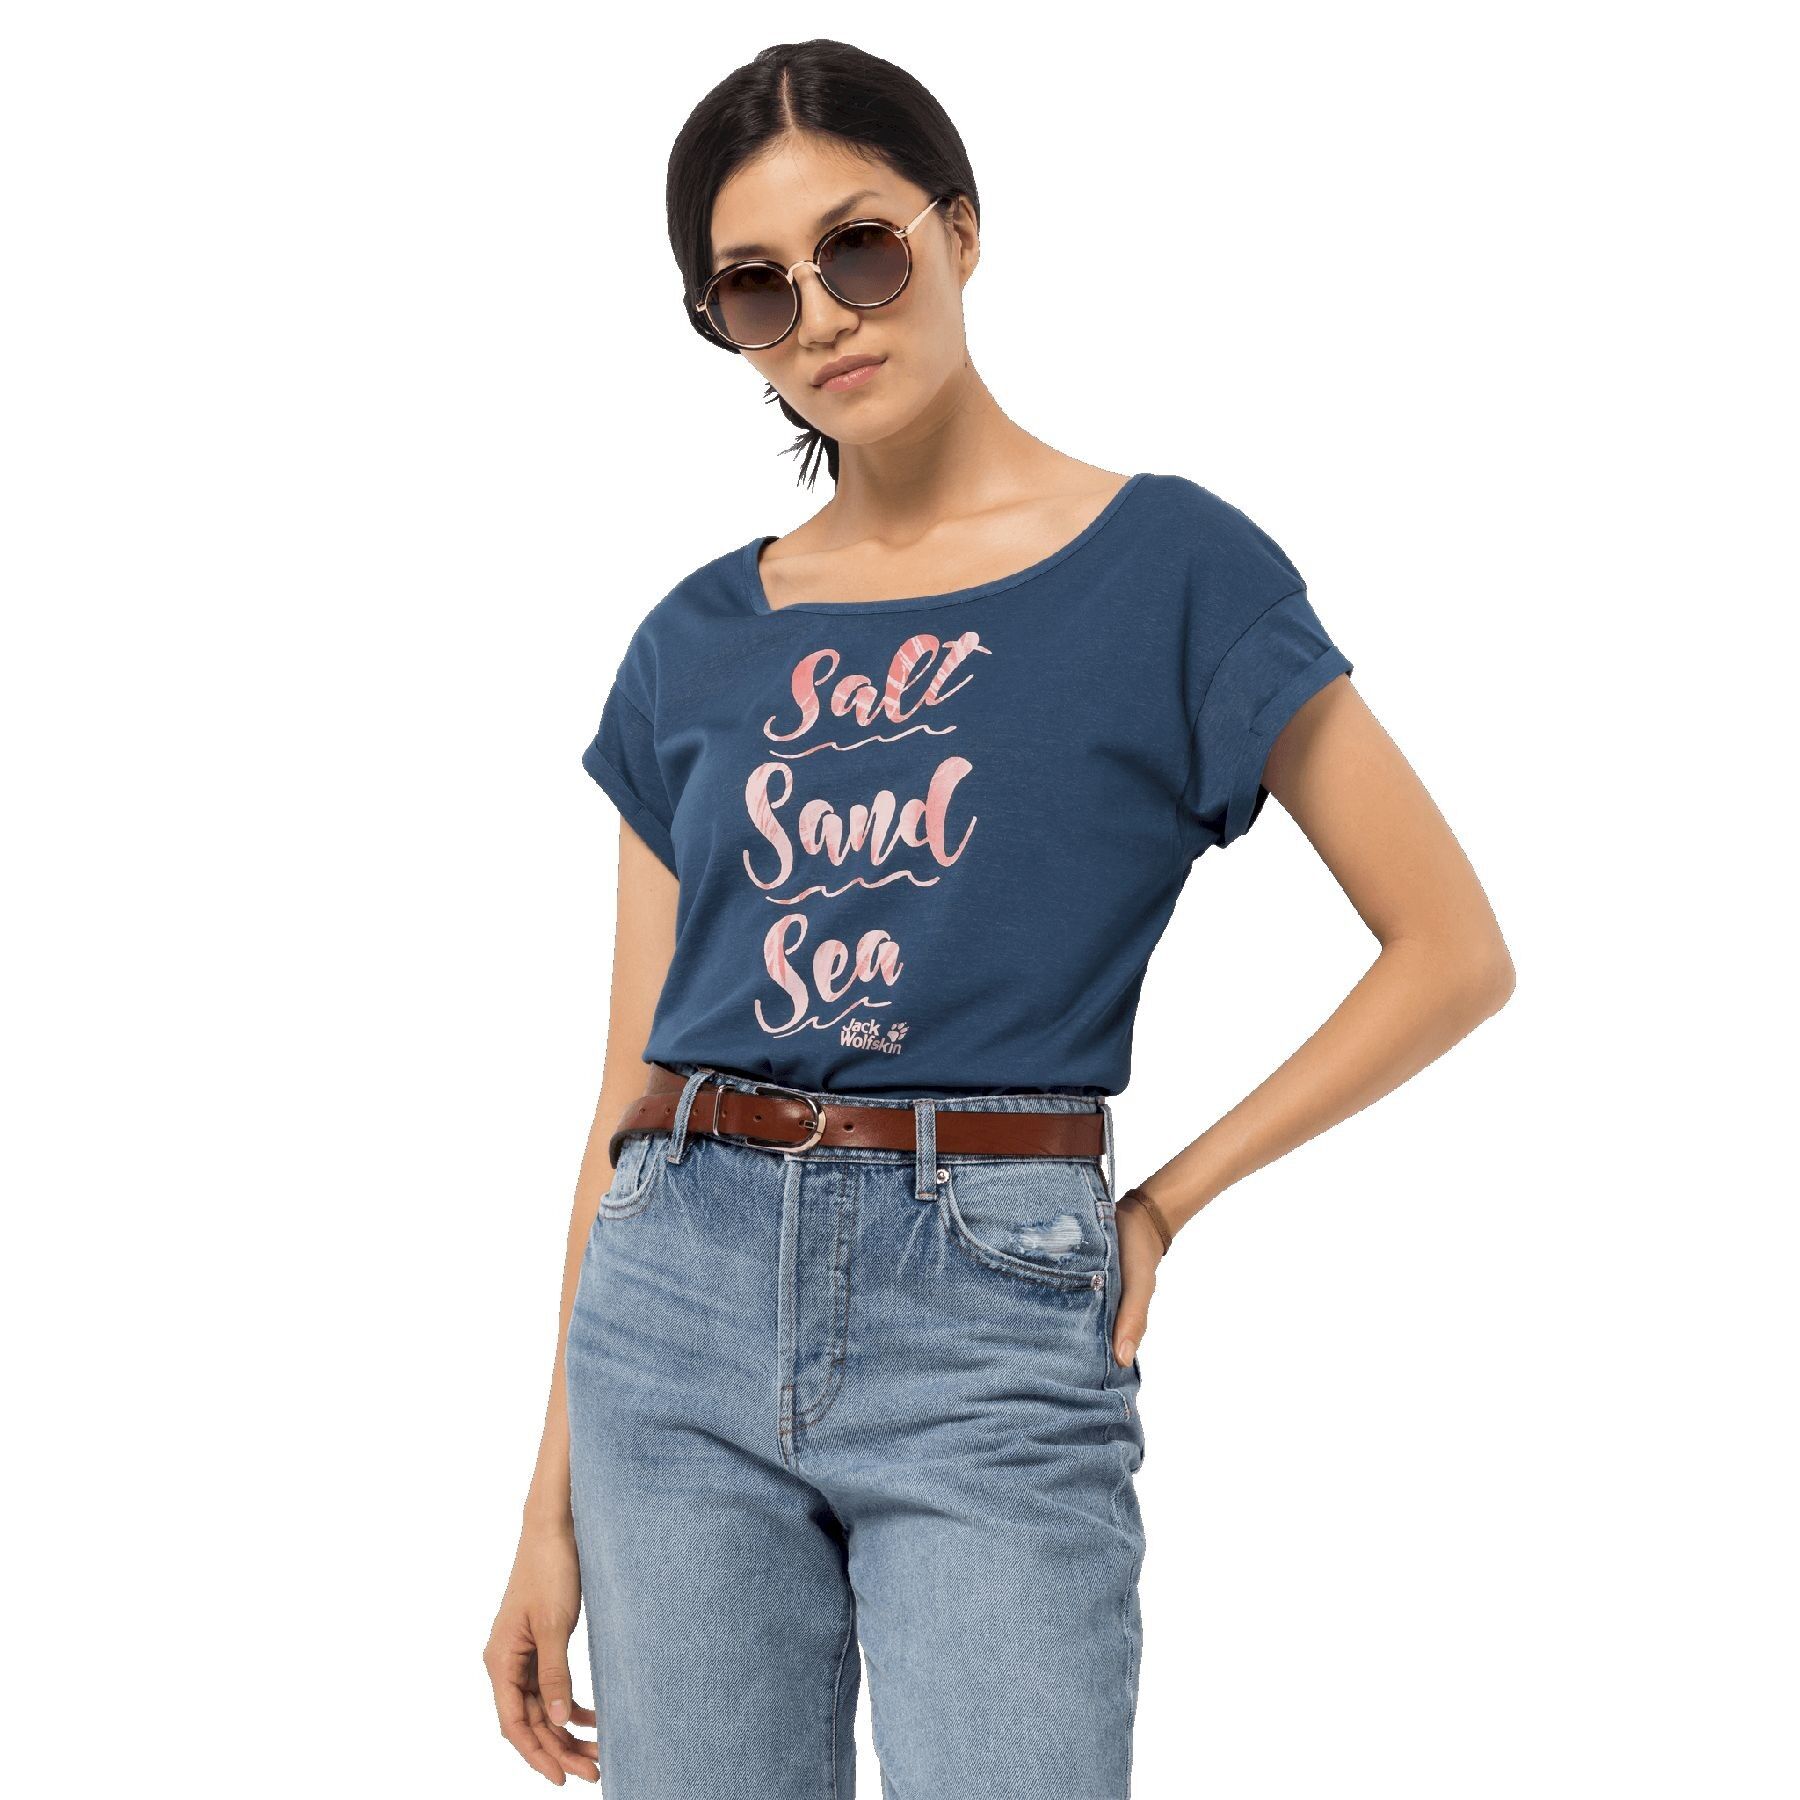 Jack Wolfskin Salt Sand Sea T - Camiseta - Mujer